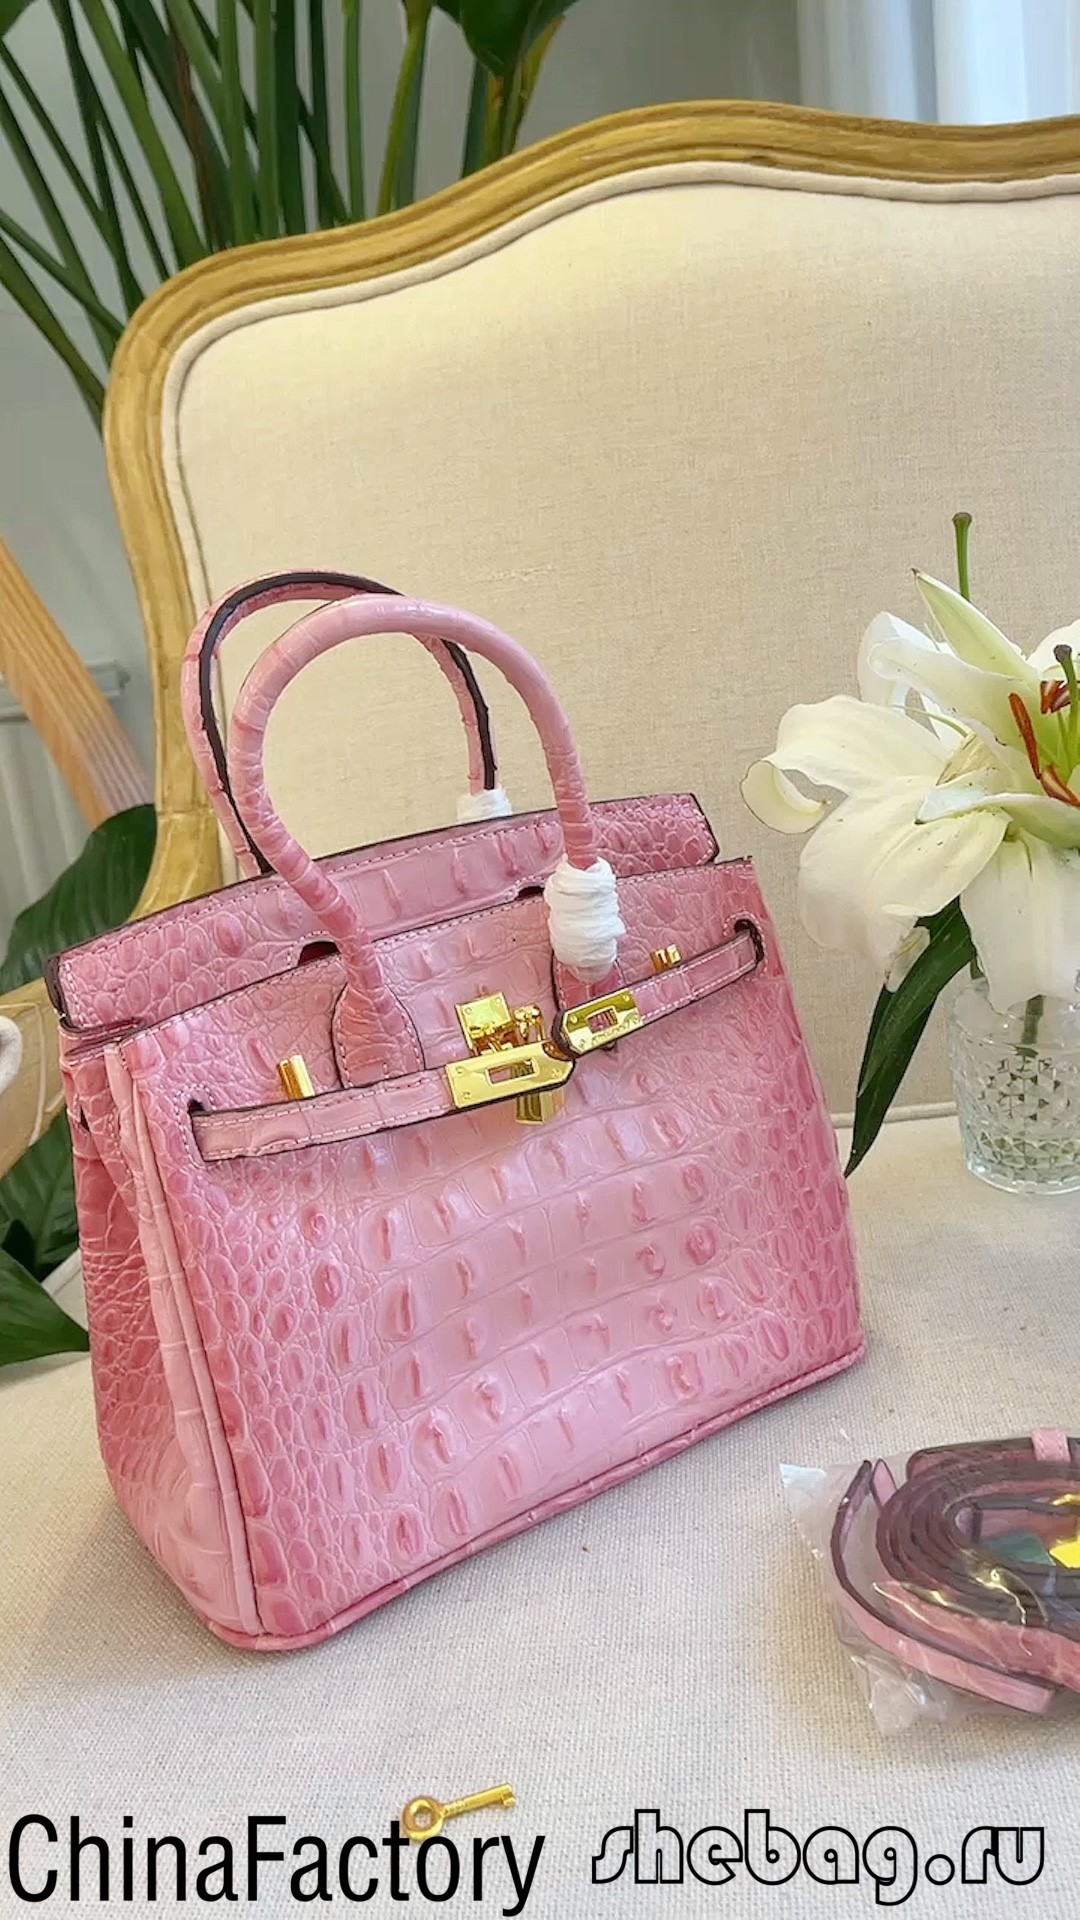 ກະເປົາແບຣນເນມຄຸນນະພາບສູງ ຜູ້ຂາຍລາຄາຖືກ (ປັບປຸງປີ 2022)-ຄຸນະພາບທີ່ດີທີ່ສຸດ Fake Louis Vuitton Bag Online Store, Replica designer bag ru